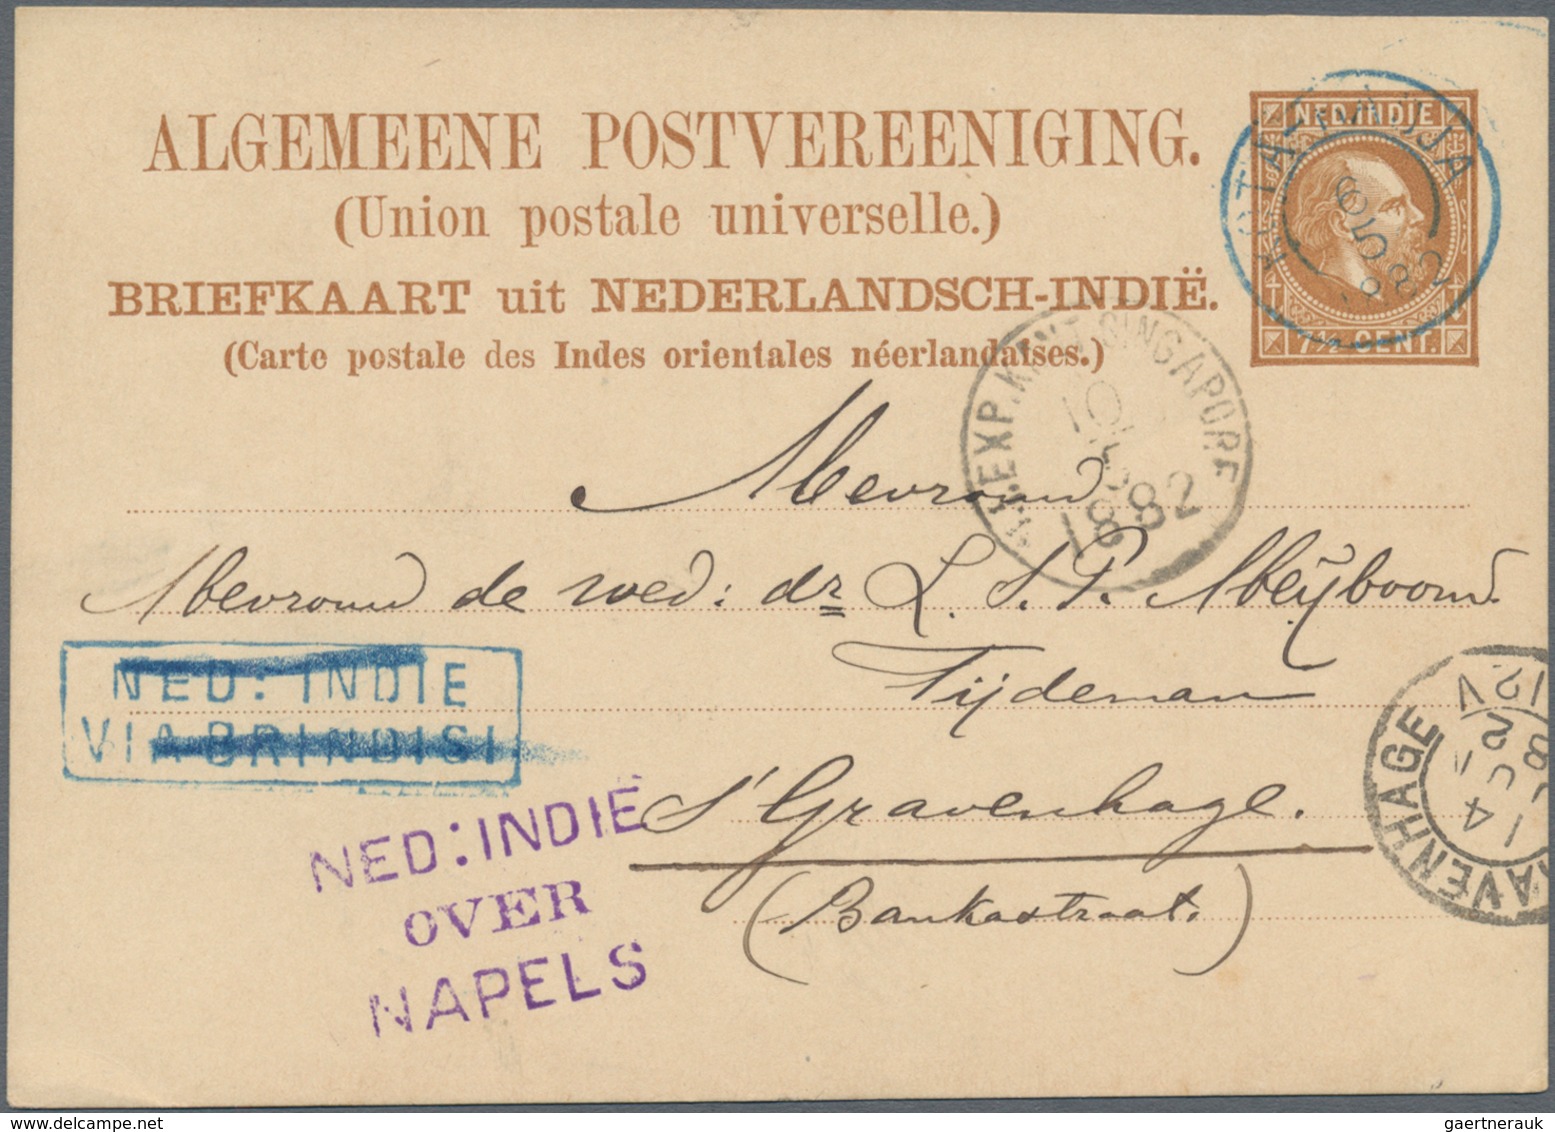 Niederländisch-Indien: 1882, Postal Stationery Card 7 1/2 C Brown Cancelled By Kota Raja Date Stamp - Netherlands Indies